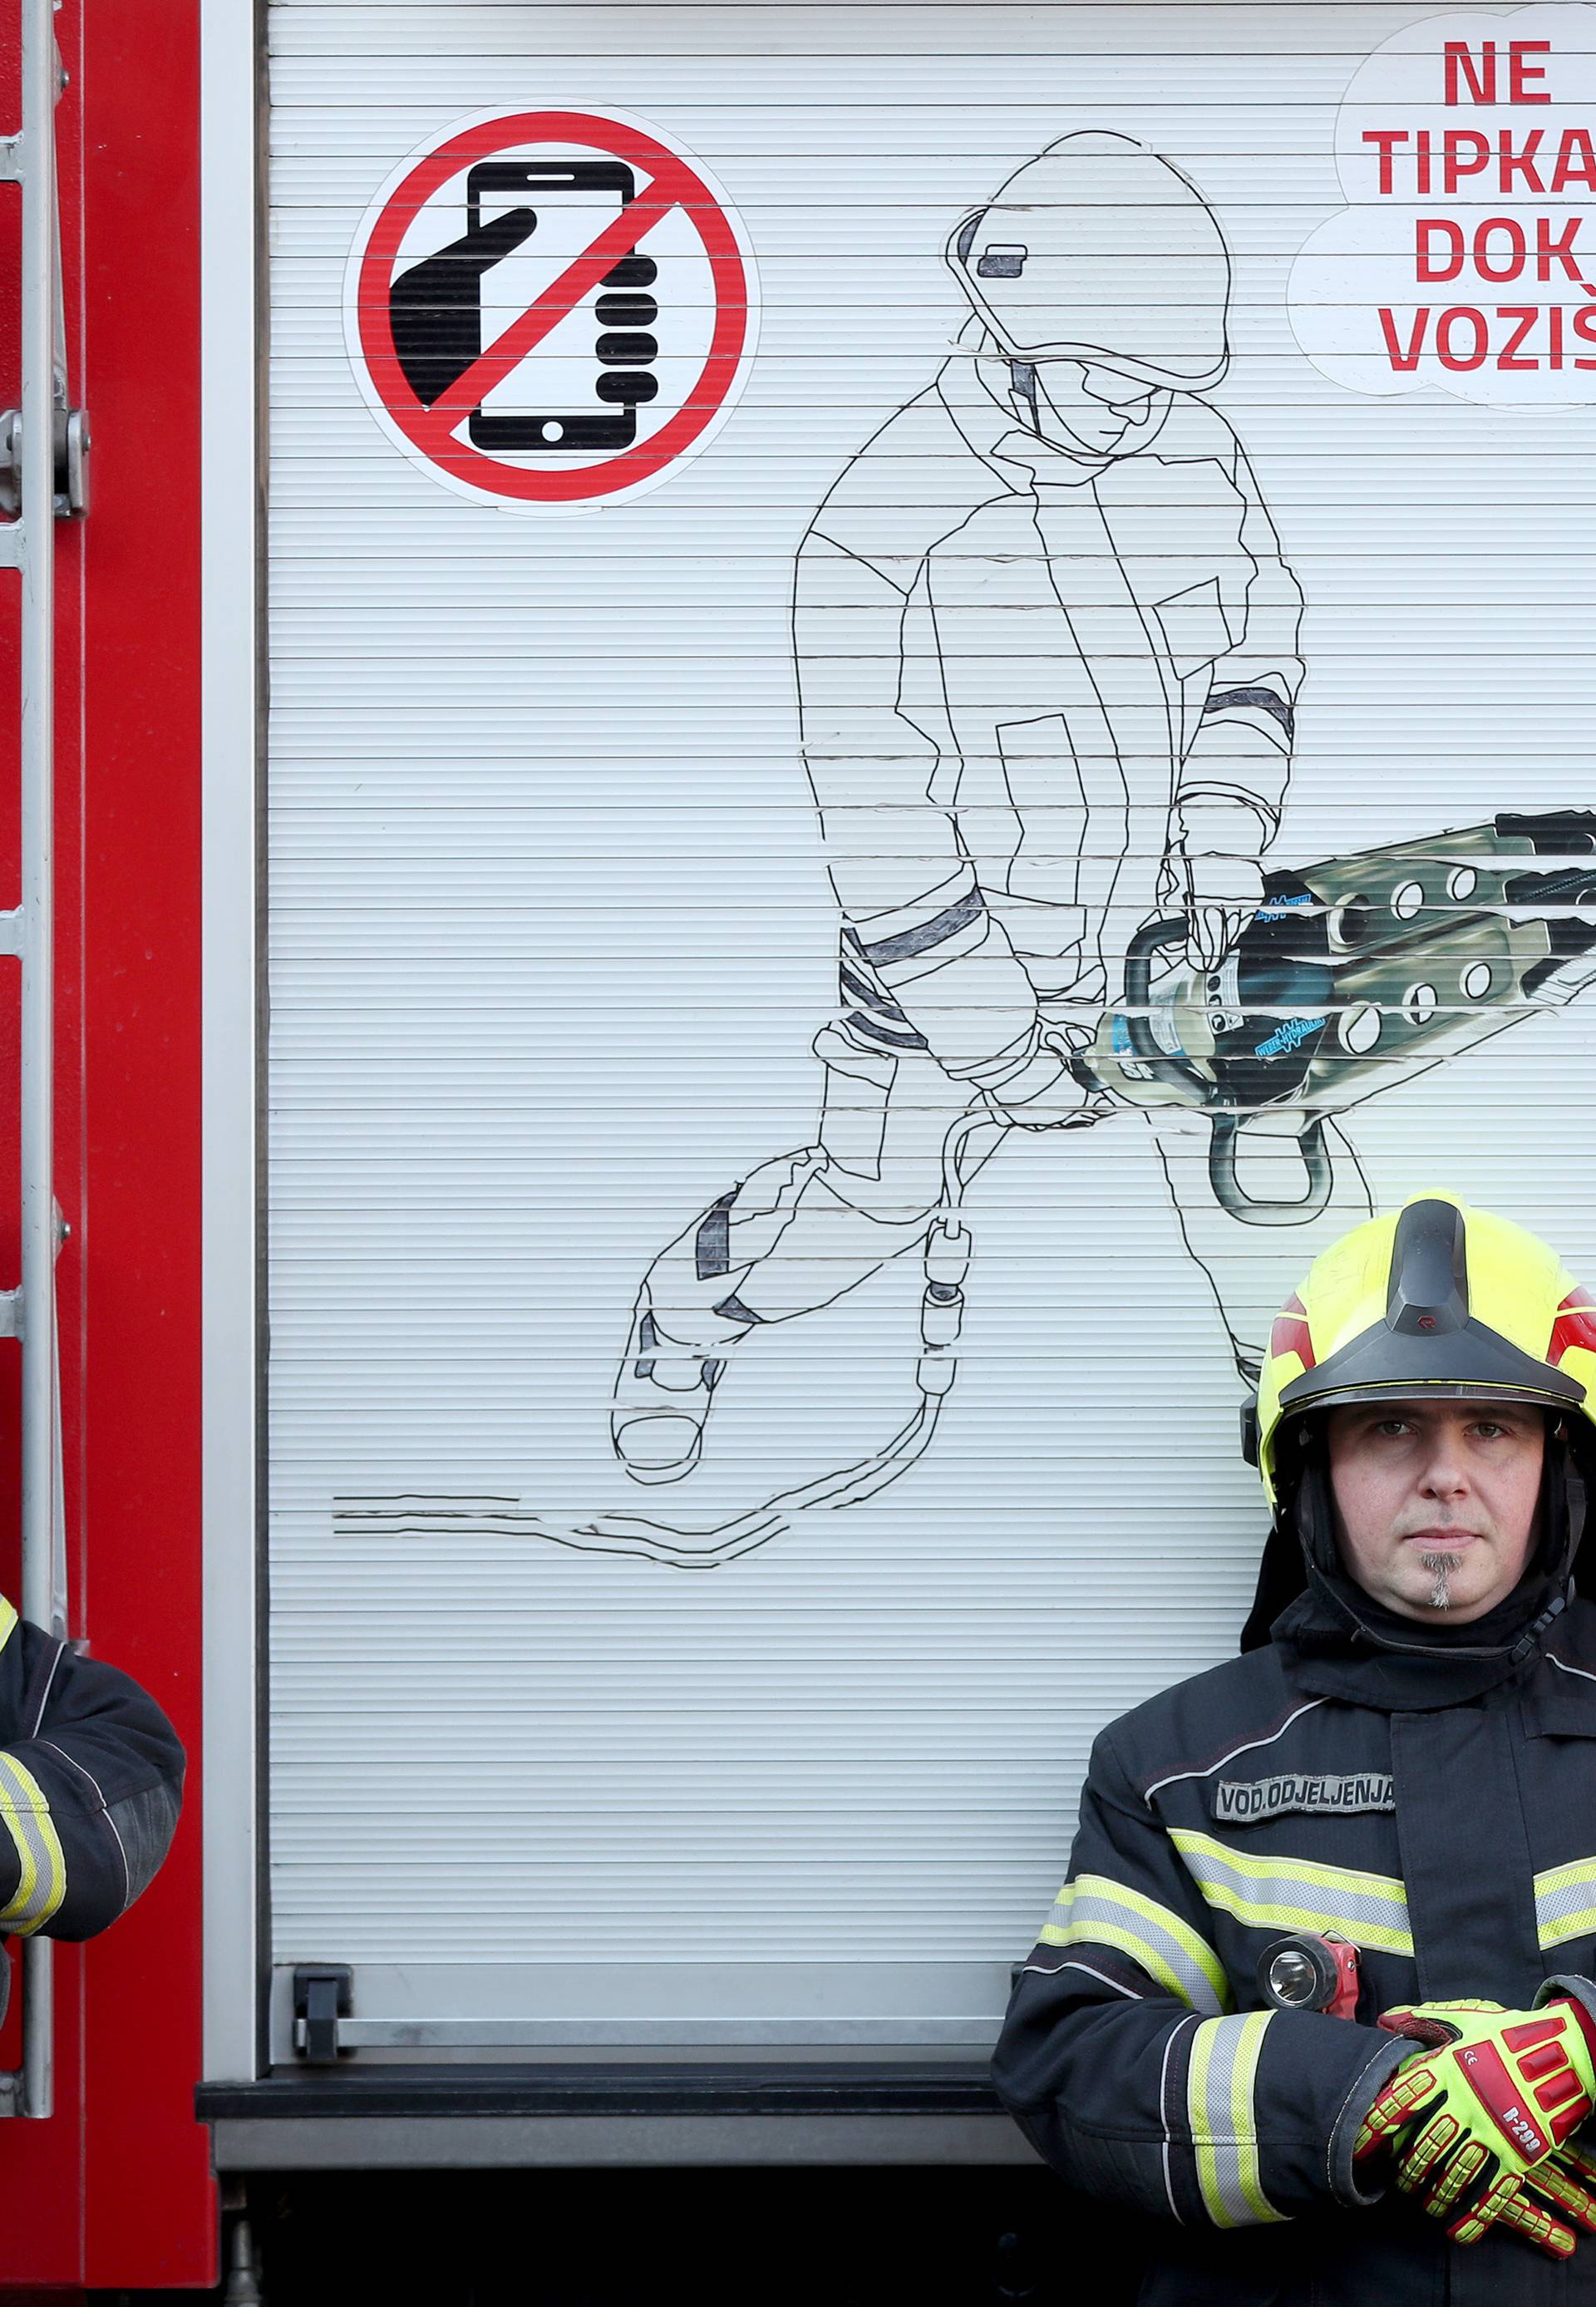 Provjerili smo kako vatrogasci spašavaju unesrećene iz vozila